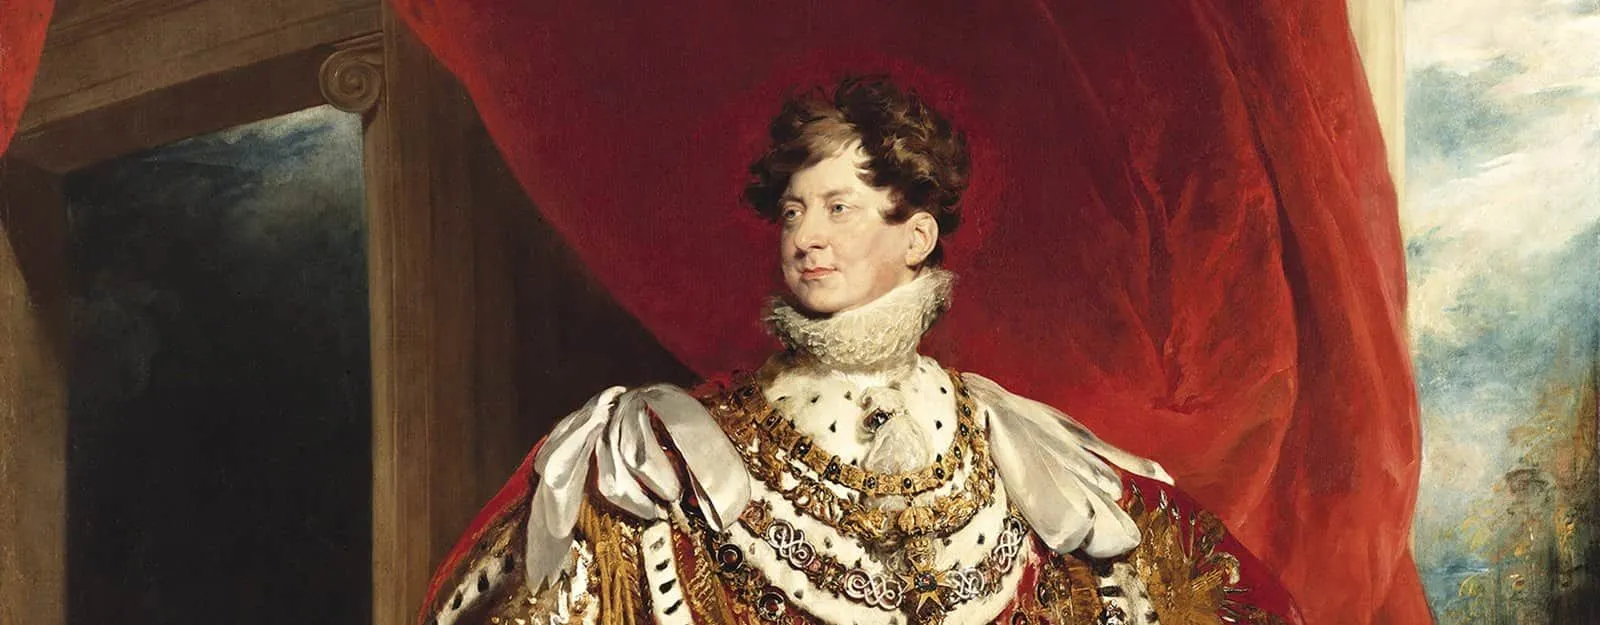 Målning av kung George IV på hans utställning.